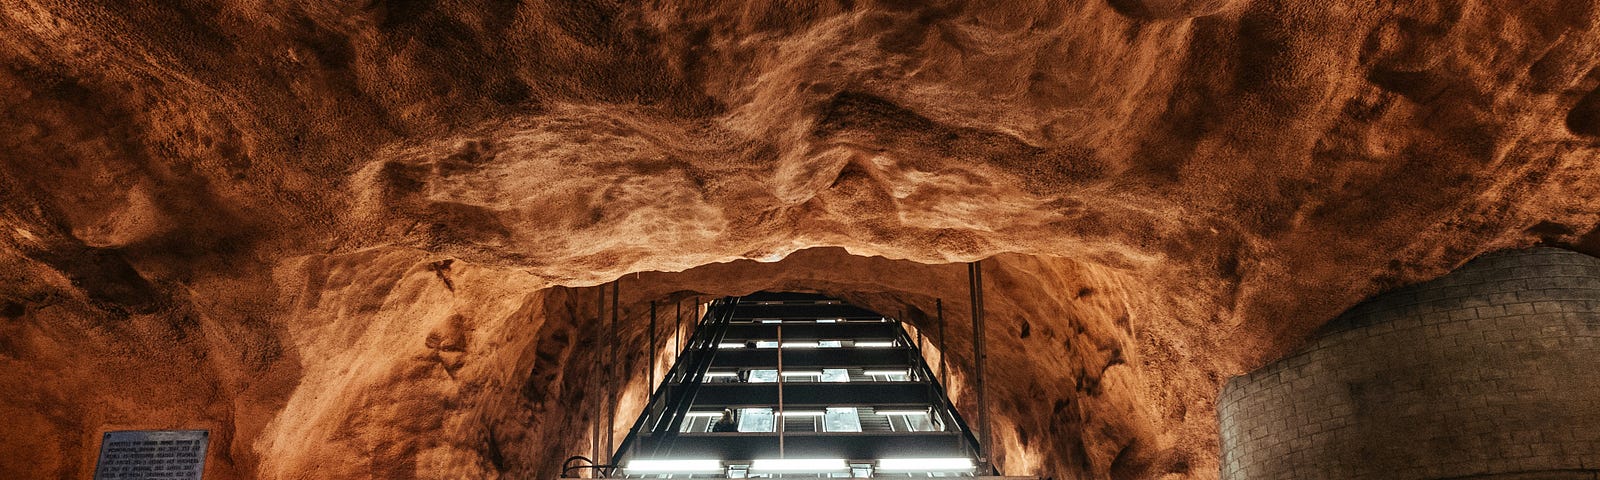 escalators in a rough-hewn rock cave